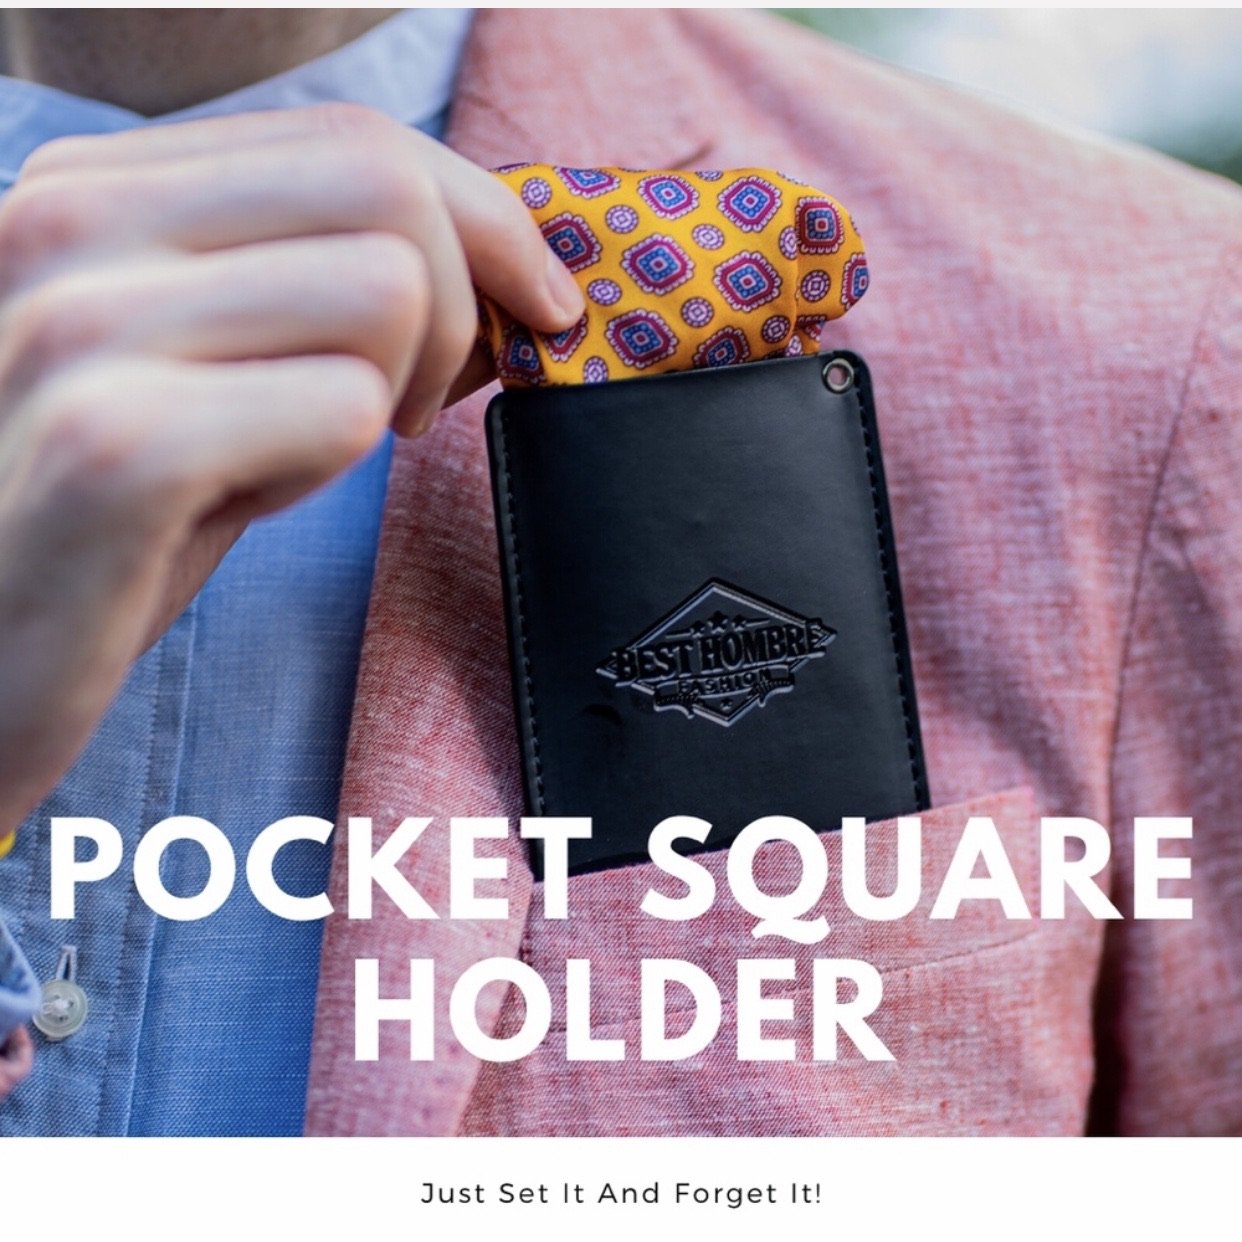 Best Hombre Pocket Square Holder - Kicks For Gents - Pocket Square Holder - Dapper